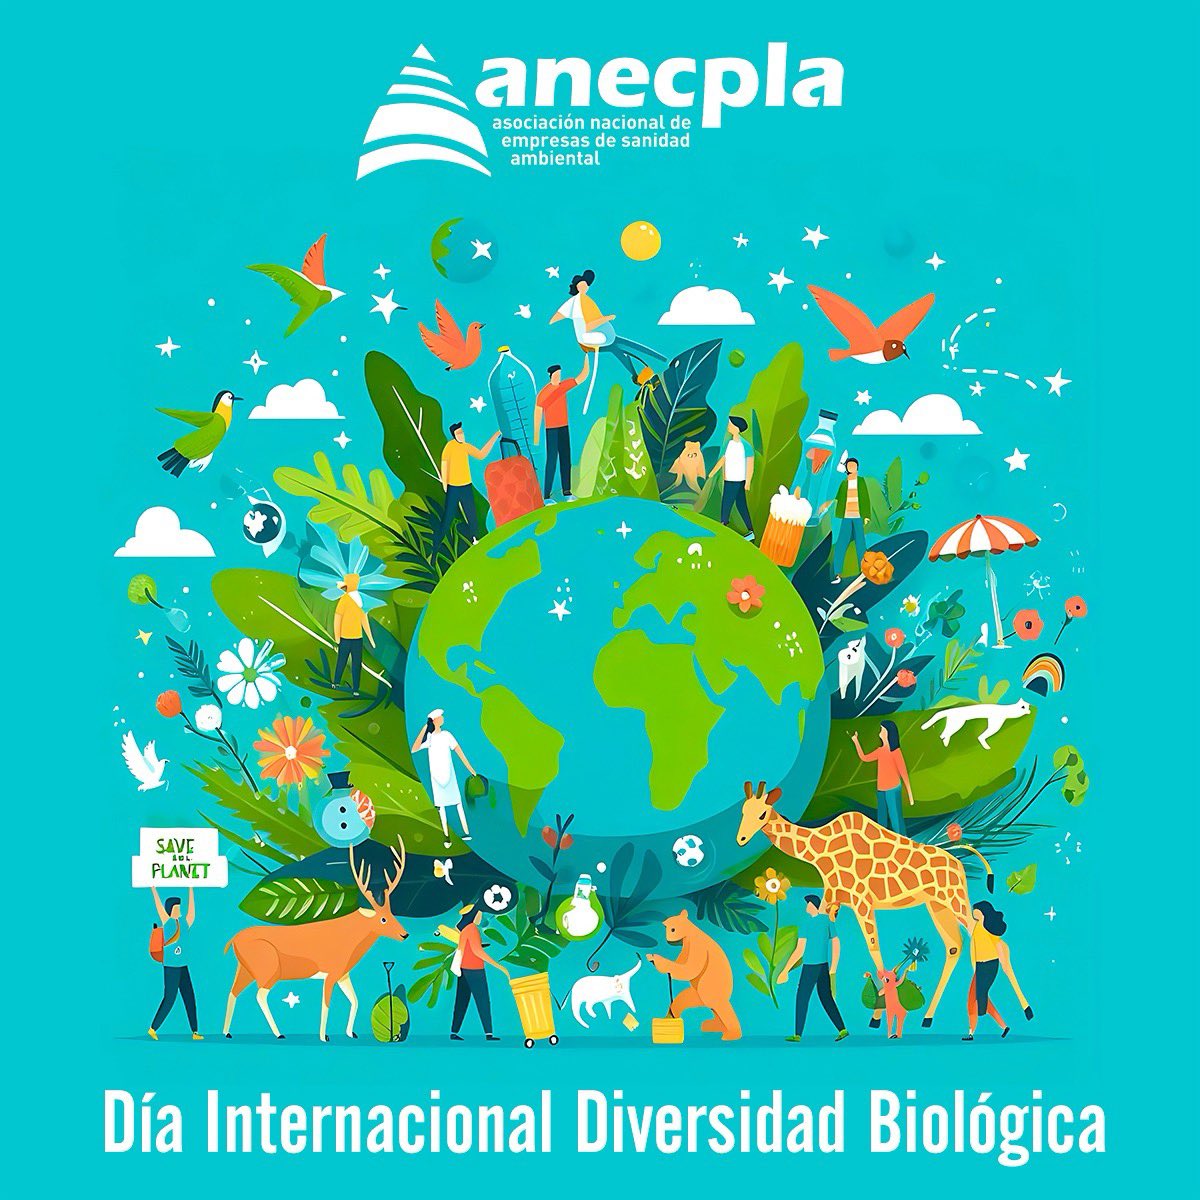 🌍🌿 Hoy celebramos el Día Internacional de la Diversidad Biológica, una ocasión perfecta para reflexionar sobre la importancia de la Sanidad Ambiental. 🌿🌍 La biodiversidad no solo embellece nuestro planeta, sino que también es esencial para mantener los ecosistemas saludables